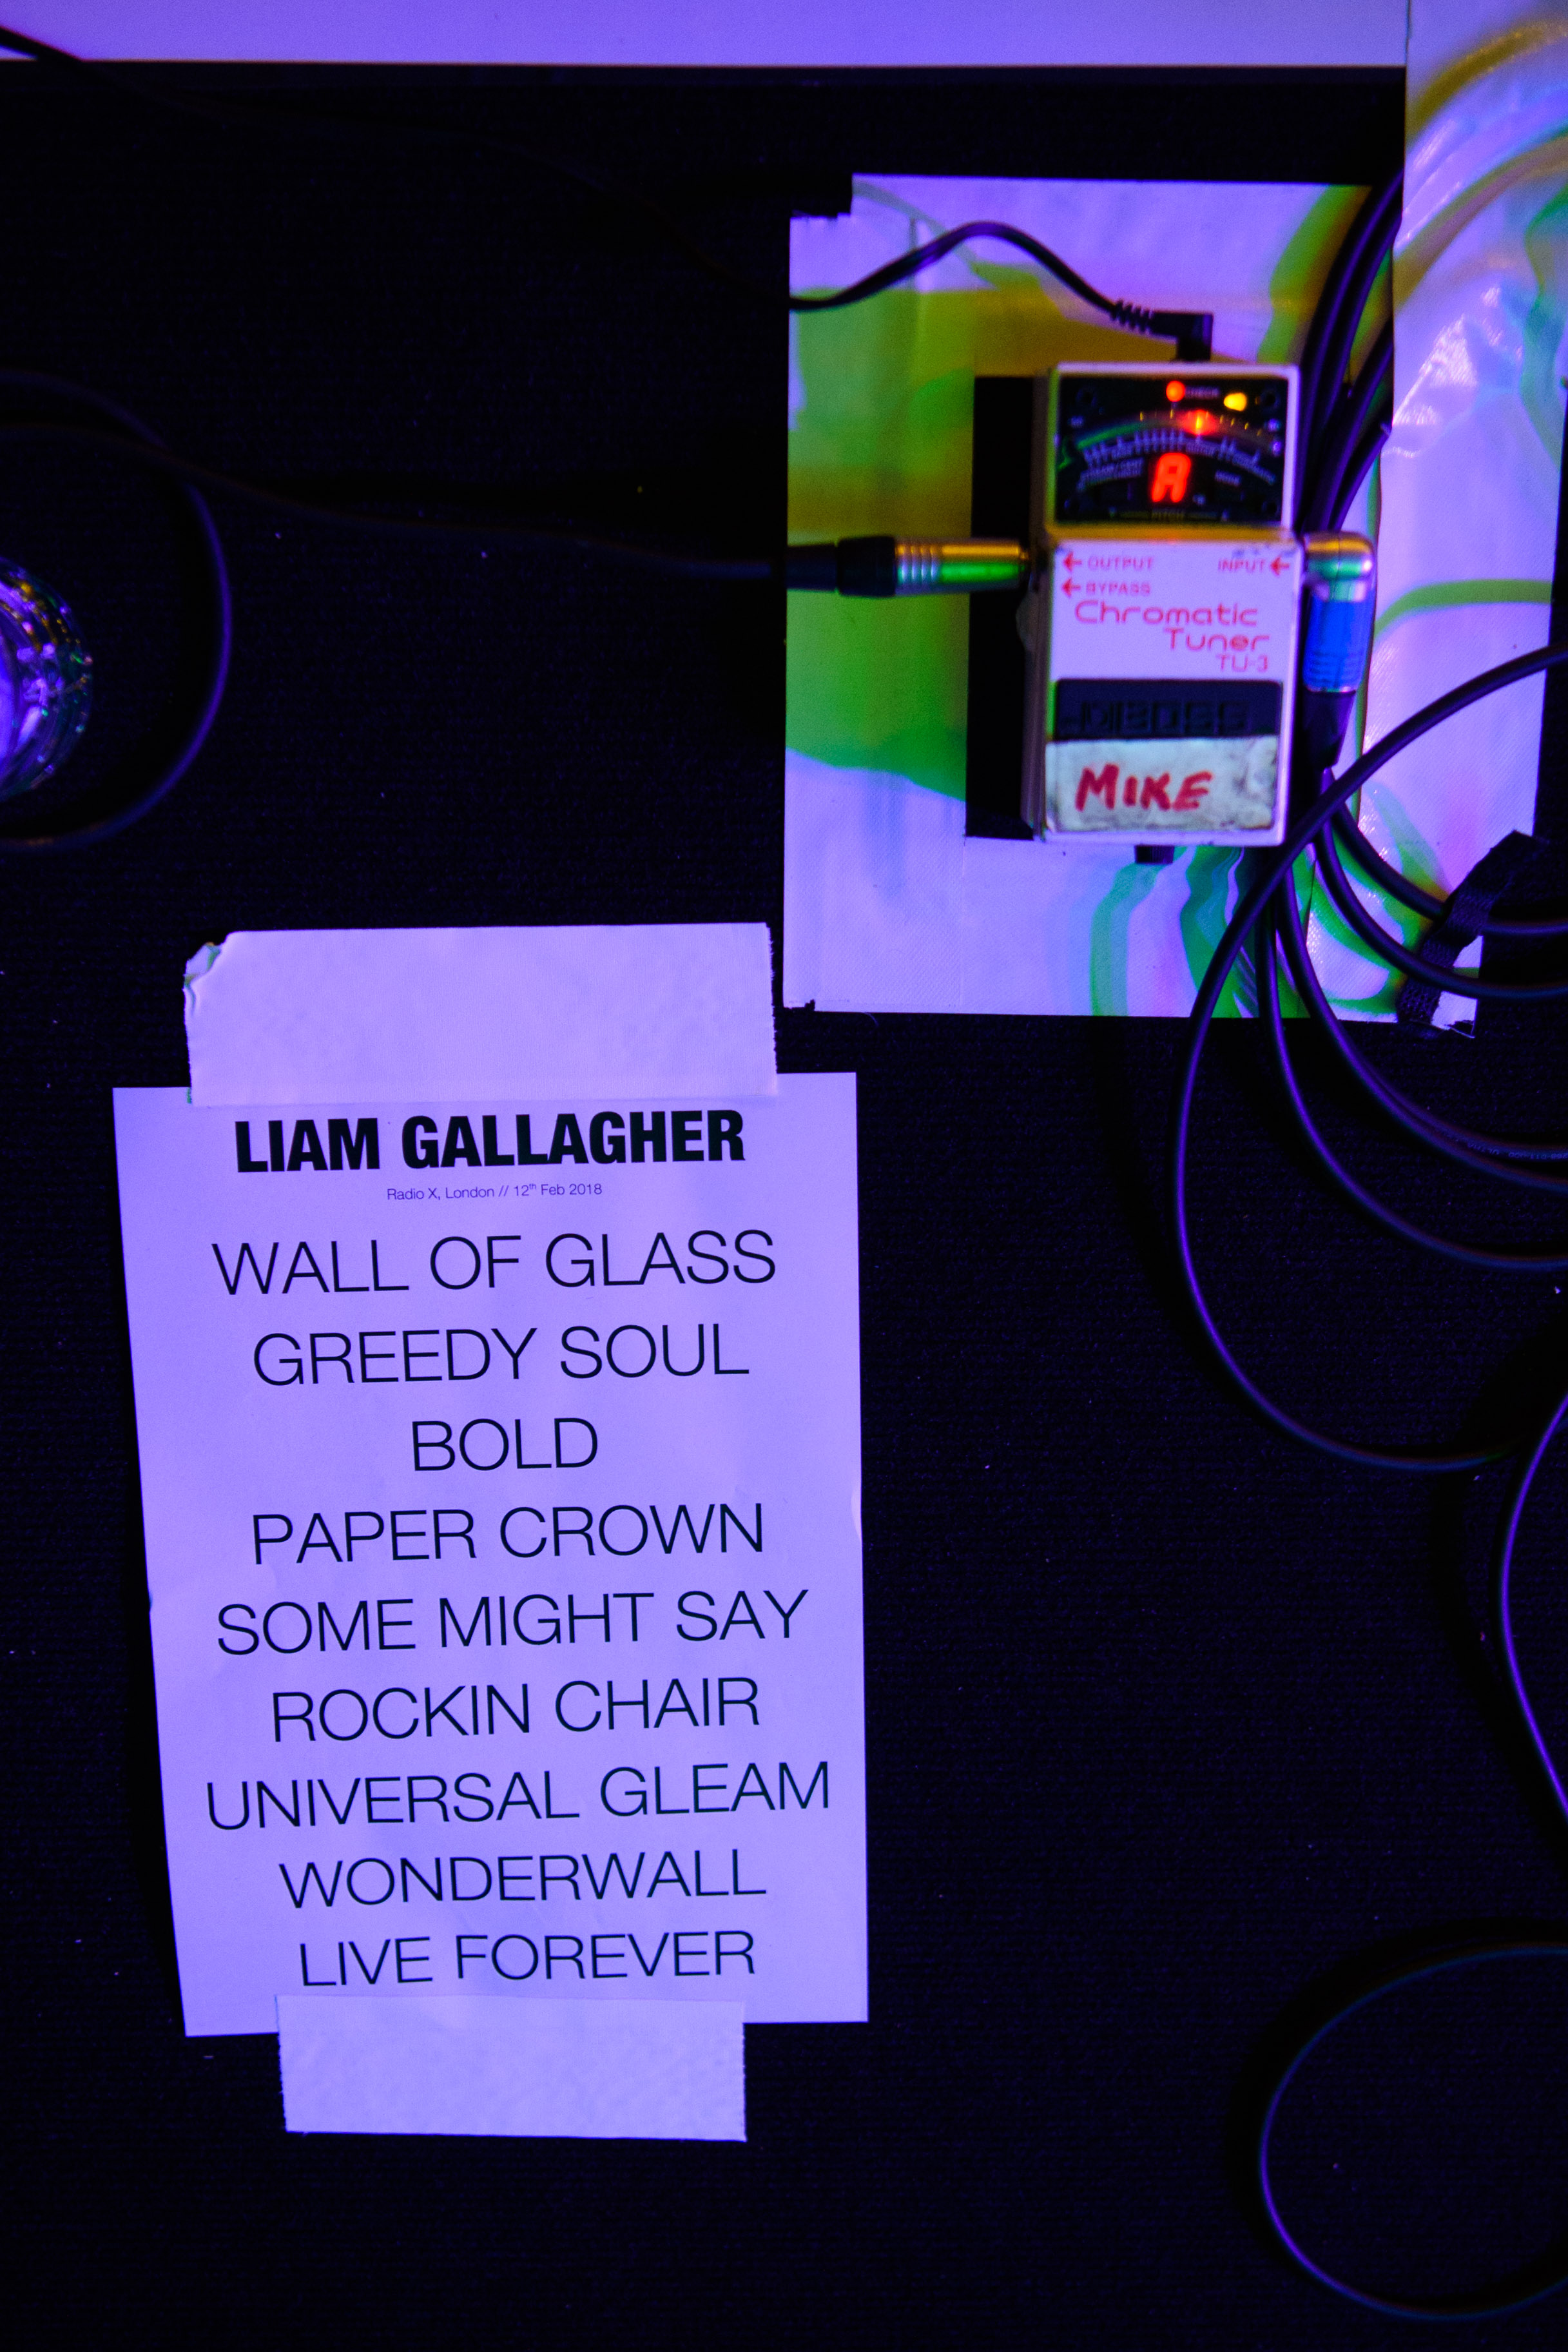 Liam Gallagher Radio X 2018